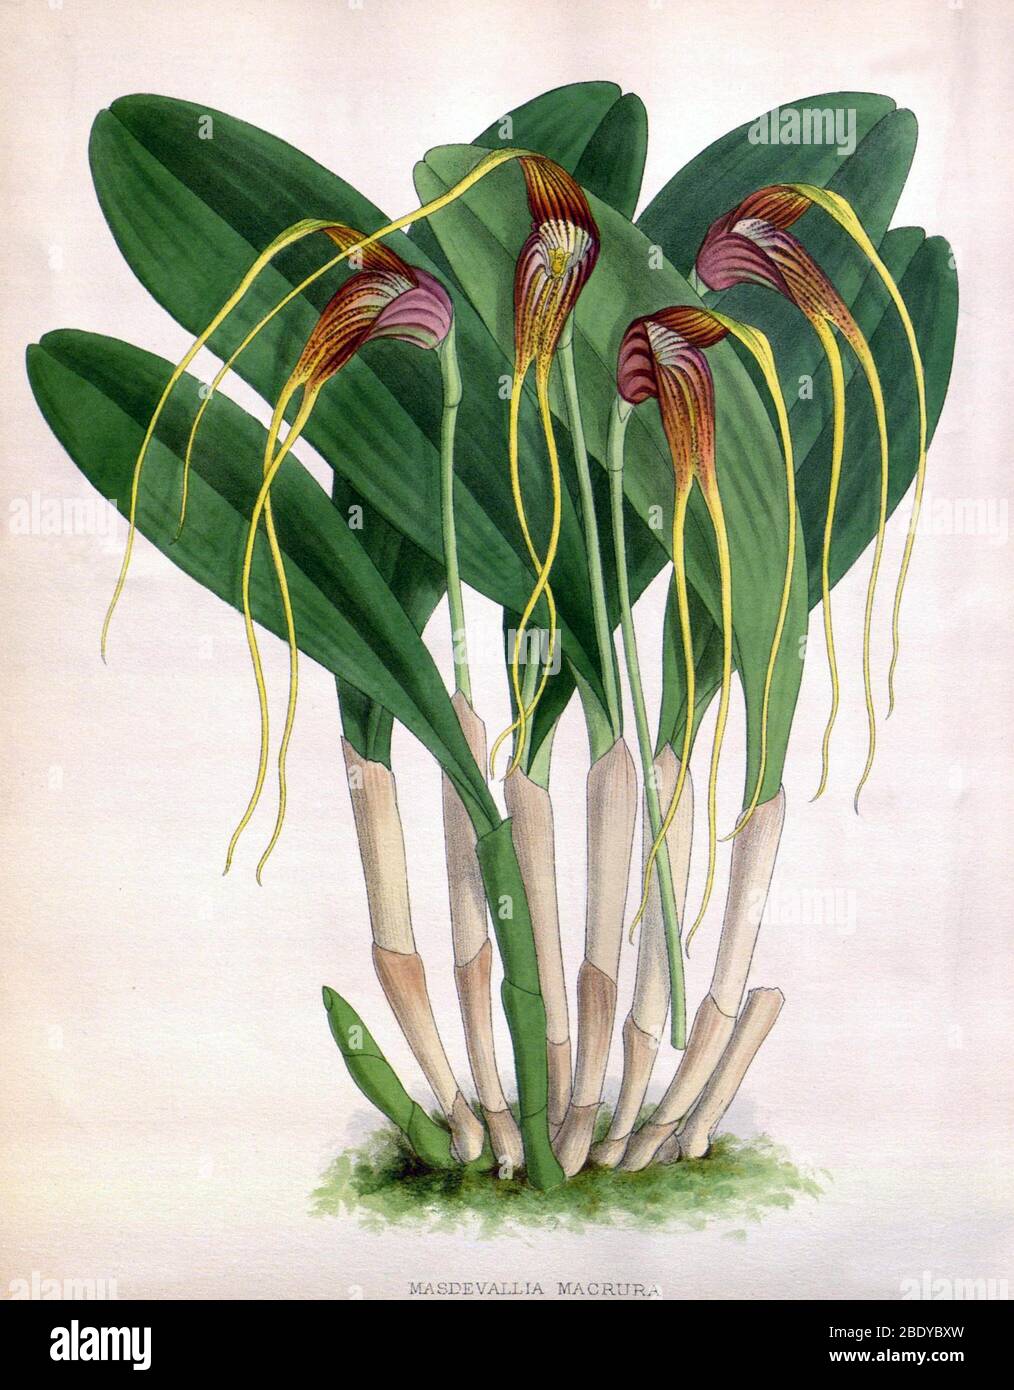 Orchidee, Masdevallia macrura, 1891 Stockfoto